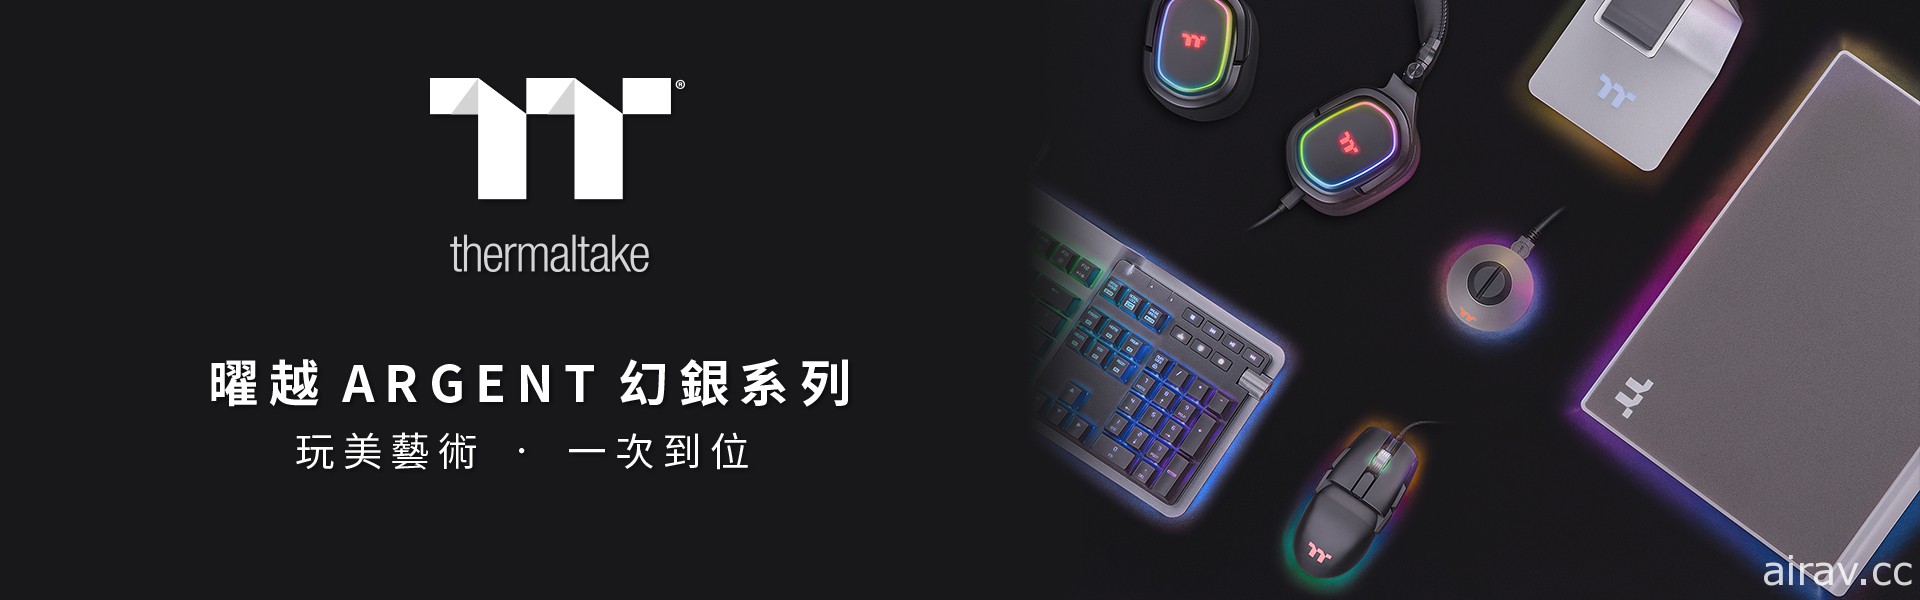 2021 曜越公開幻銀 ARGENT 系列 涵蓋機械鍵盤、電競滑鼠等產品